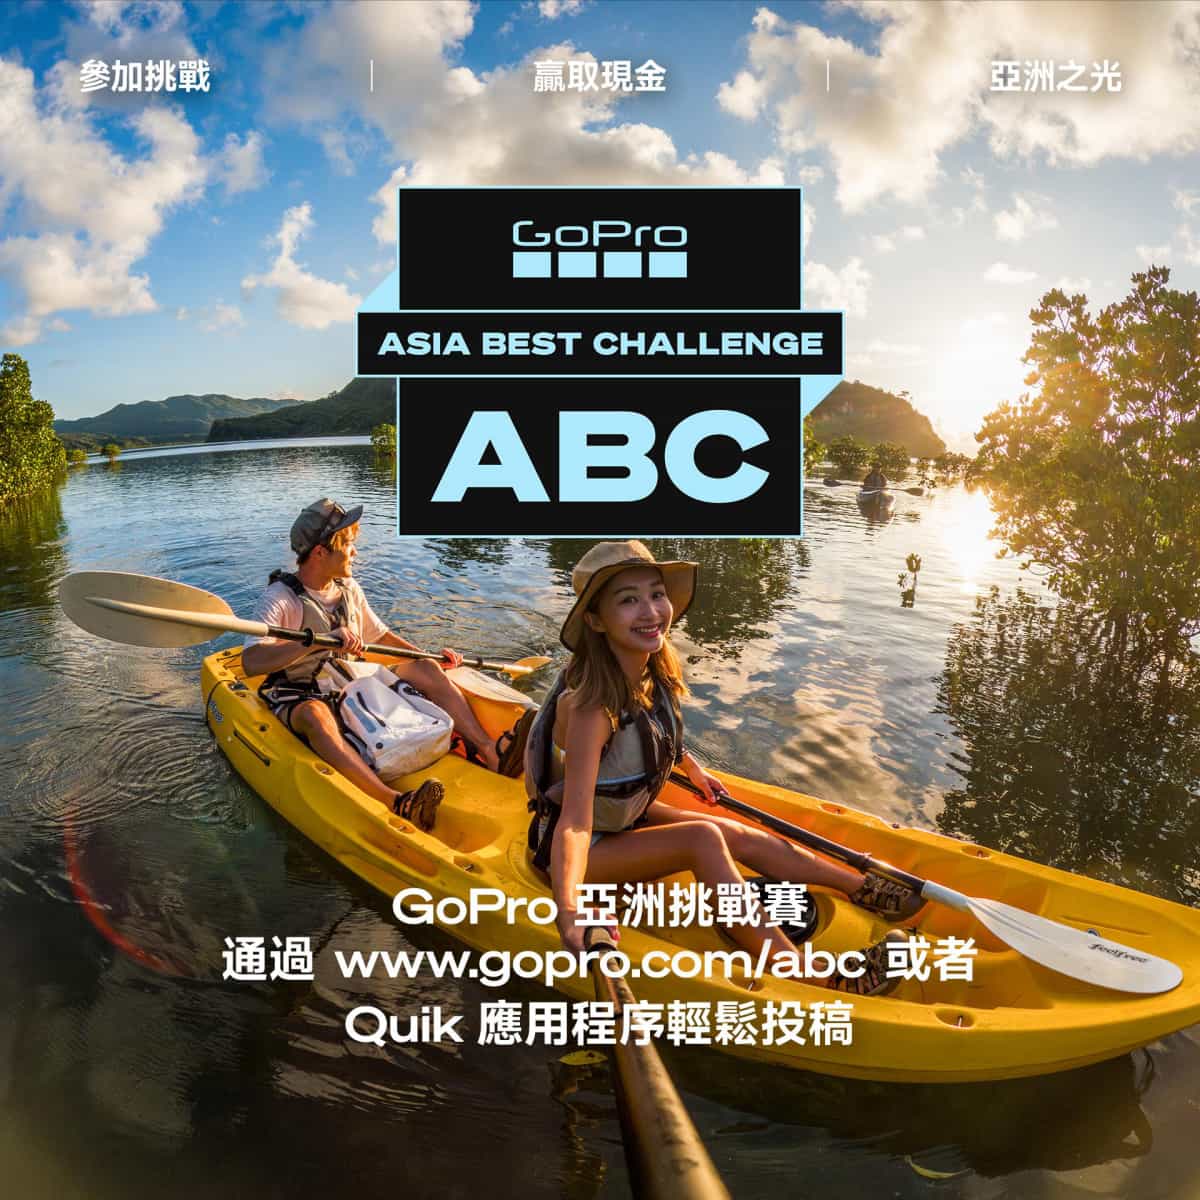 獎金池高達港幣150萬！ GoPro ABC 亞洲挑戰賽正式開跑